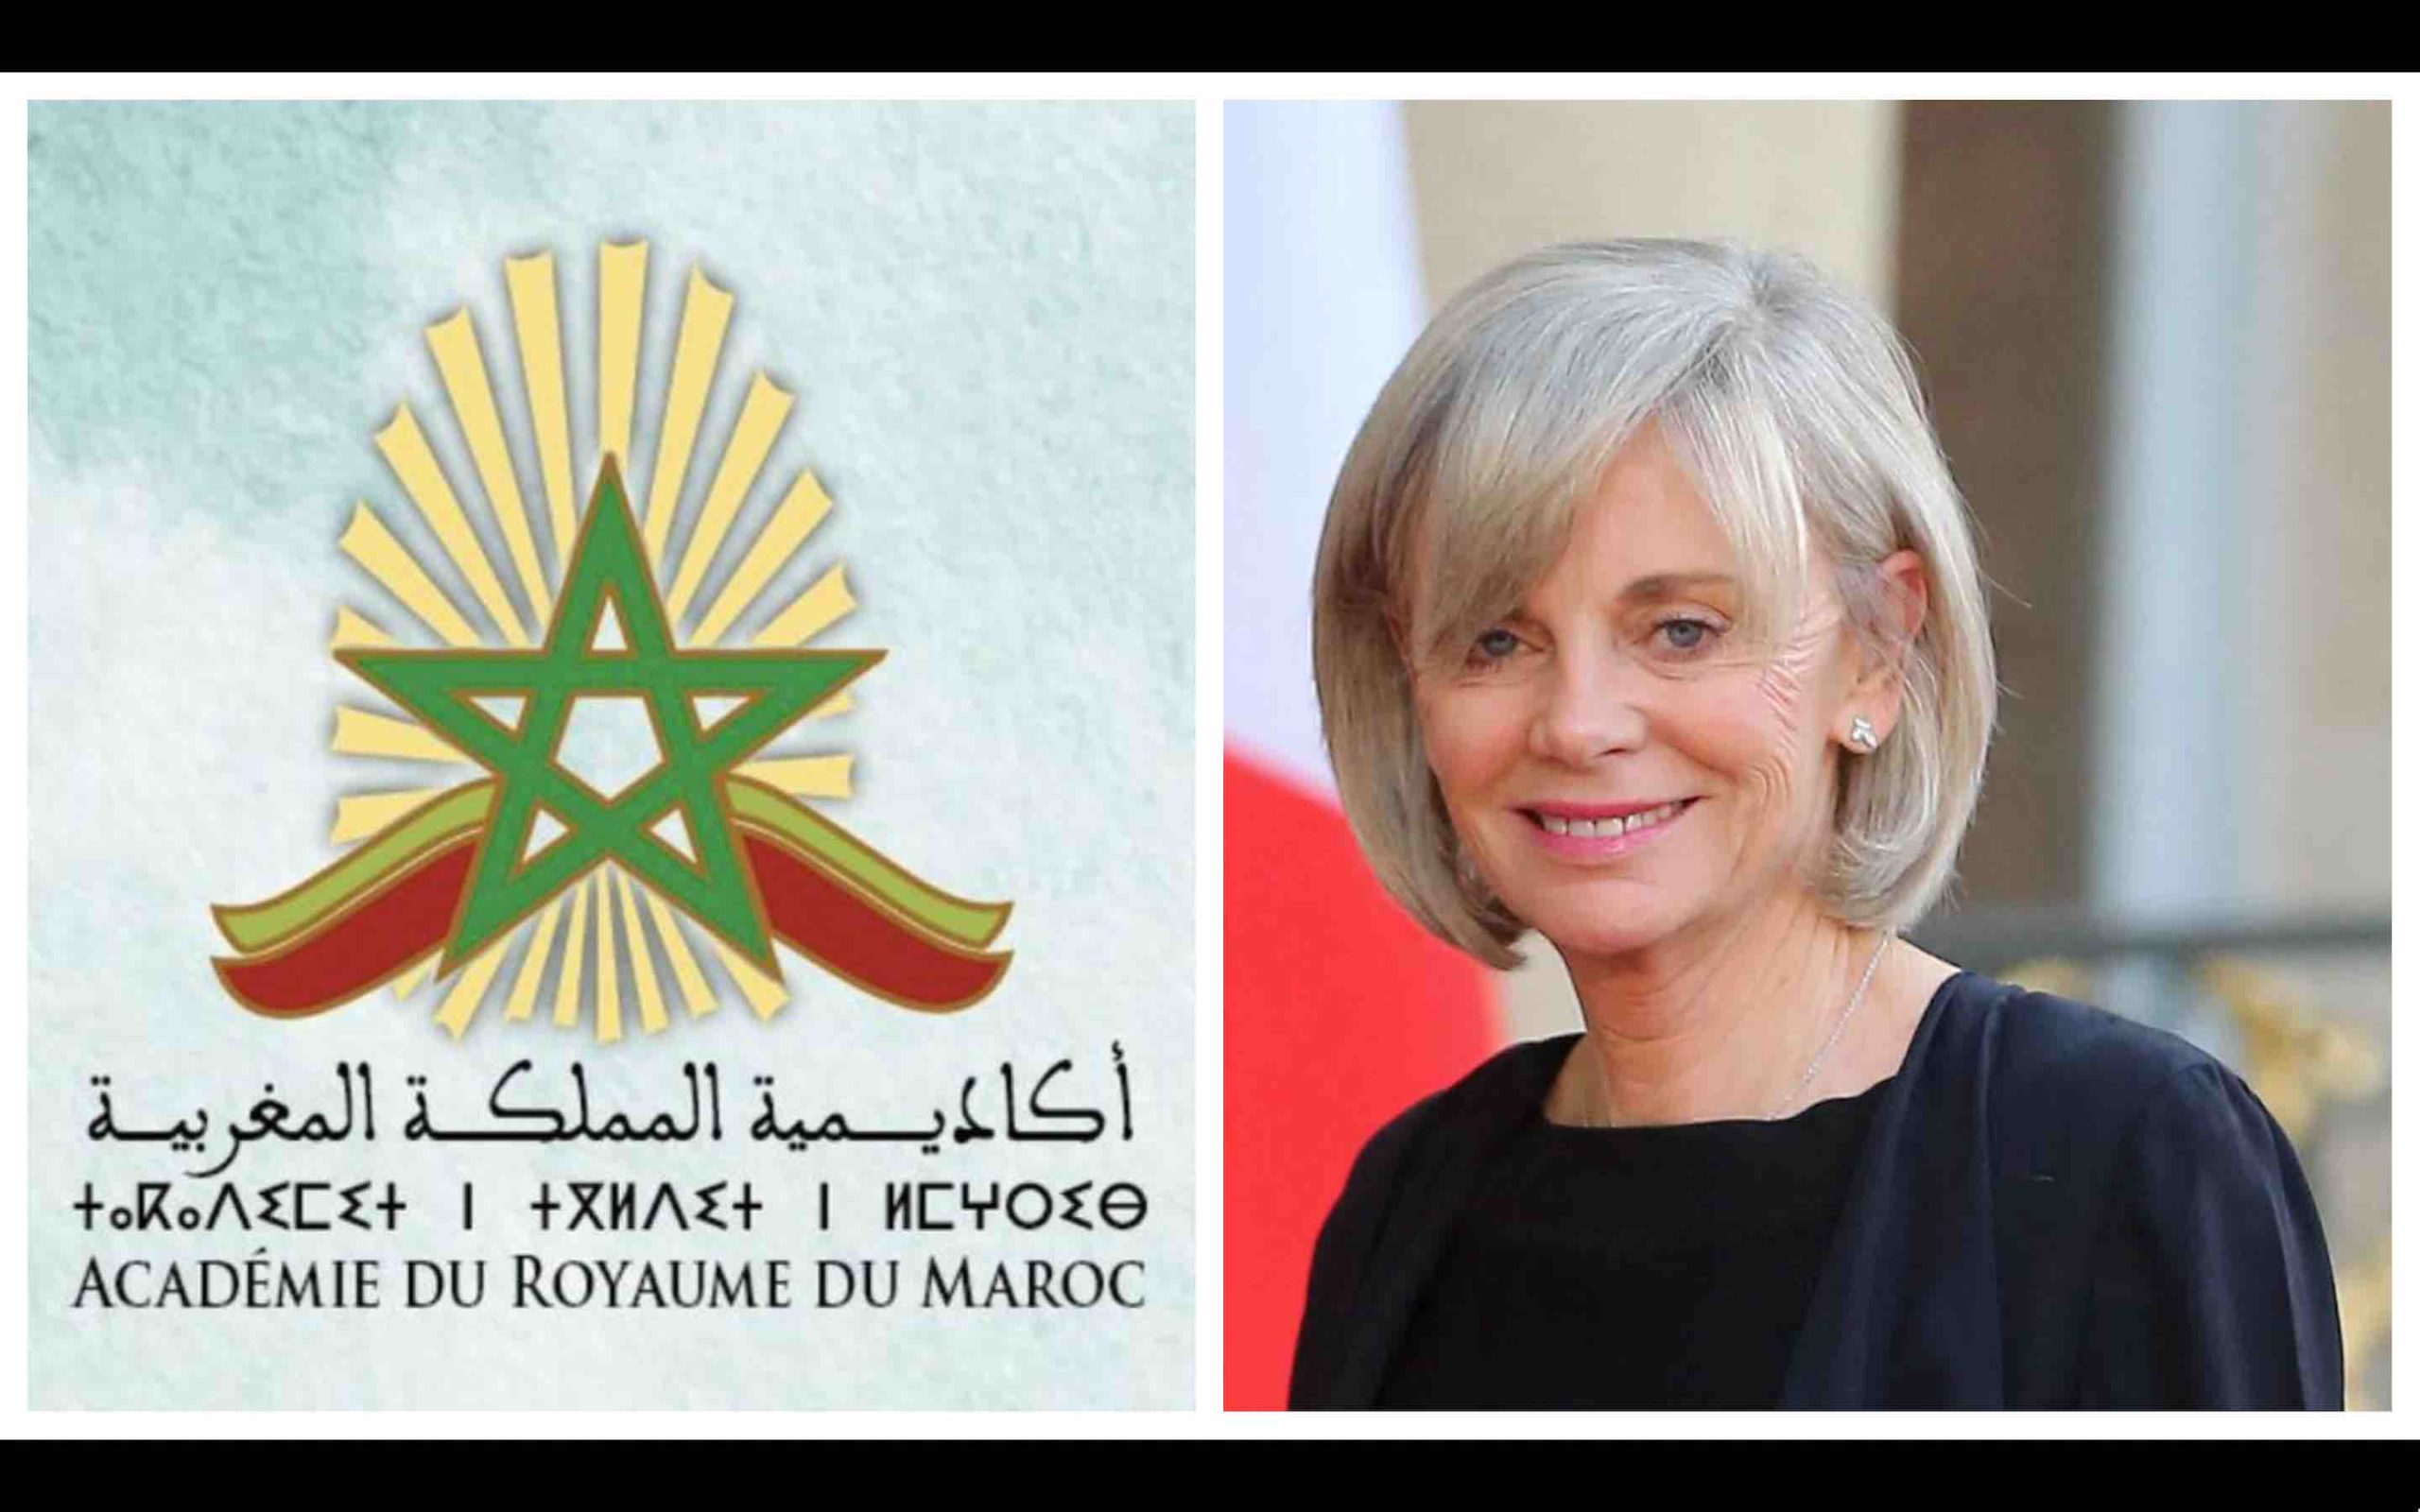 Élisabeth Guigou Académie royale du Maroc